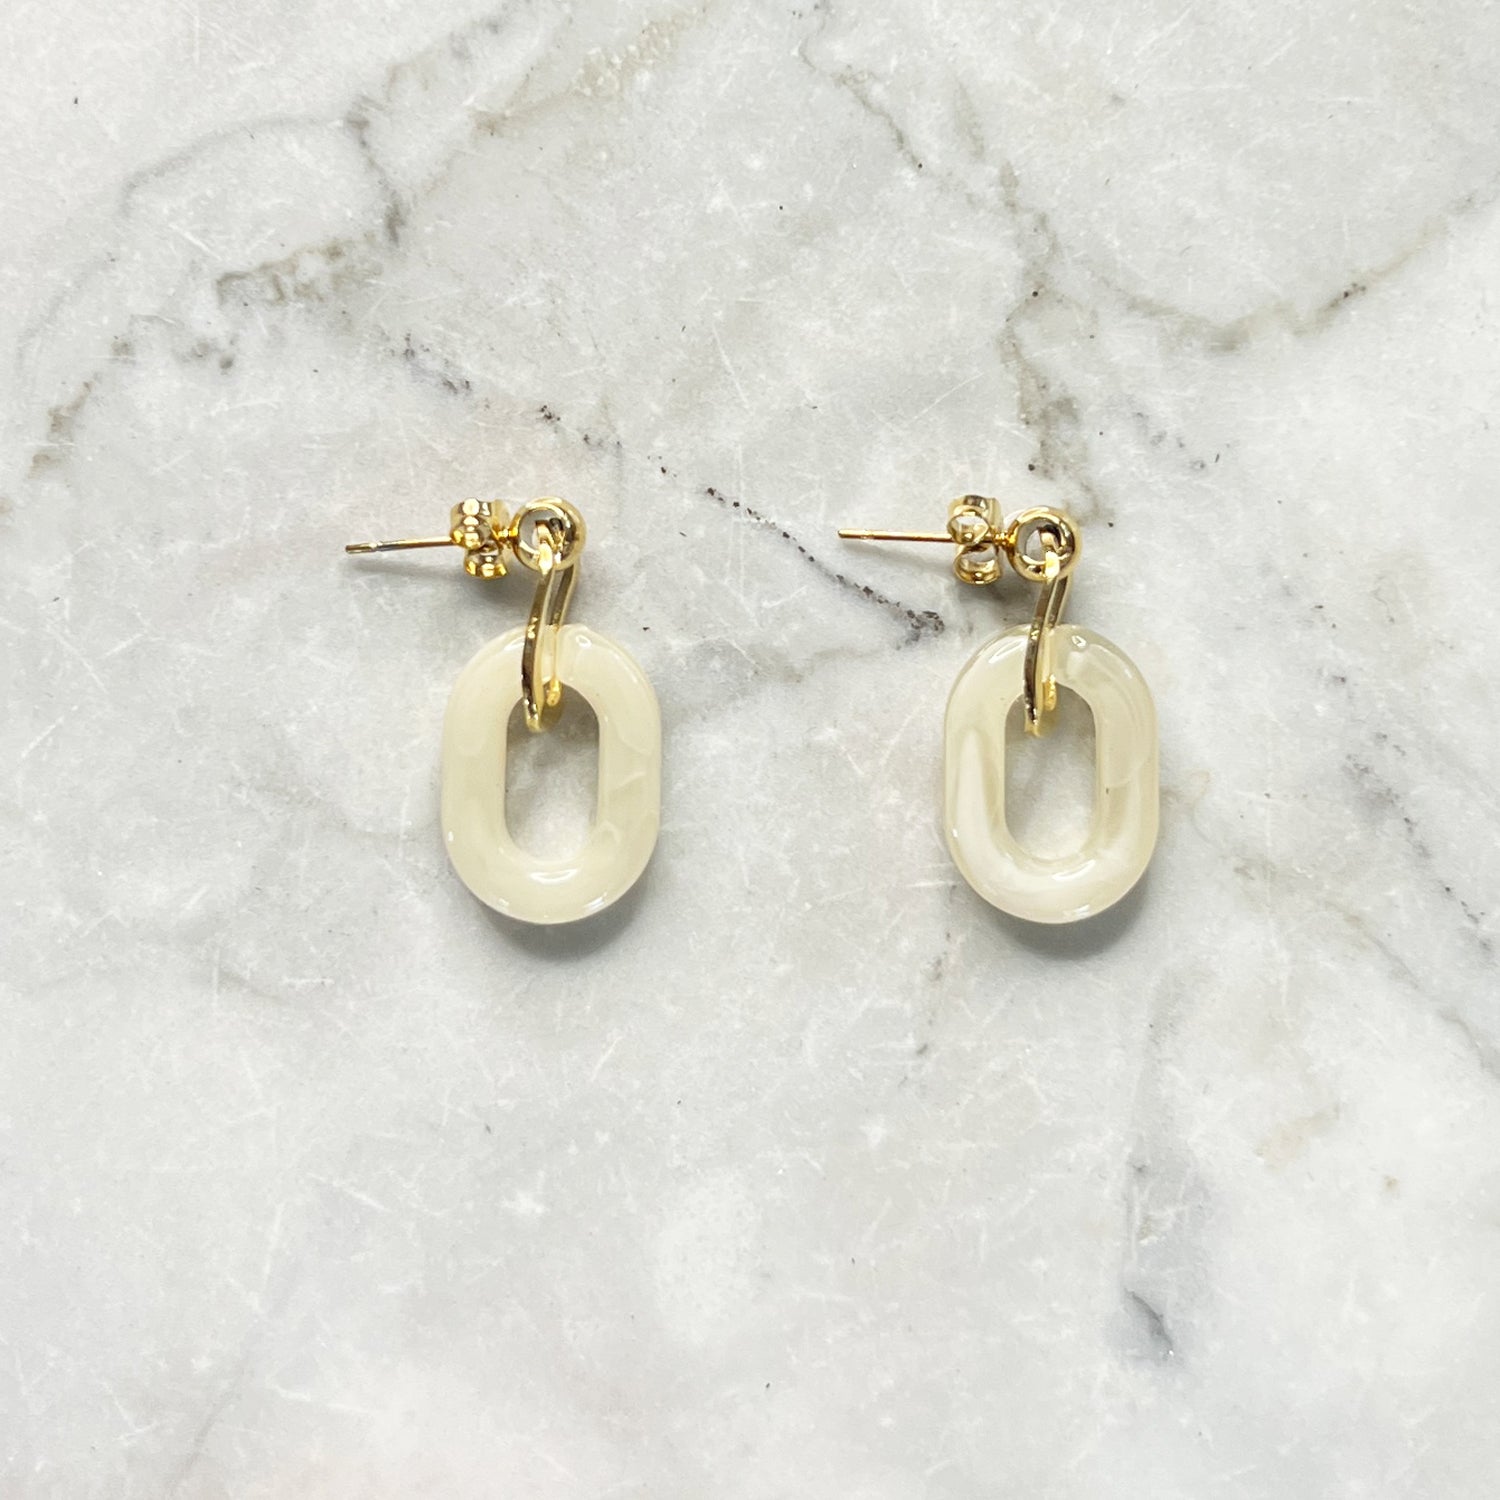 Gouden oorbellen met een beige ovale hanger er aan. De oorbellen zijn van gold plated stainless steel materiaal en zijn waterproof.   Afmetingen: 3 cm 